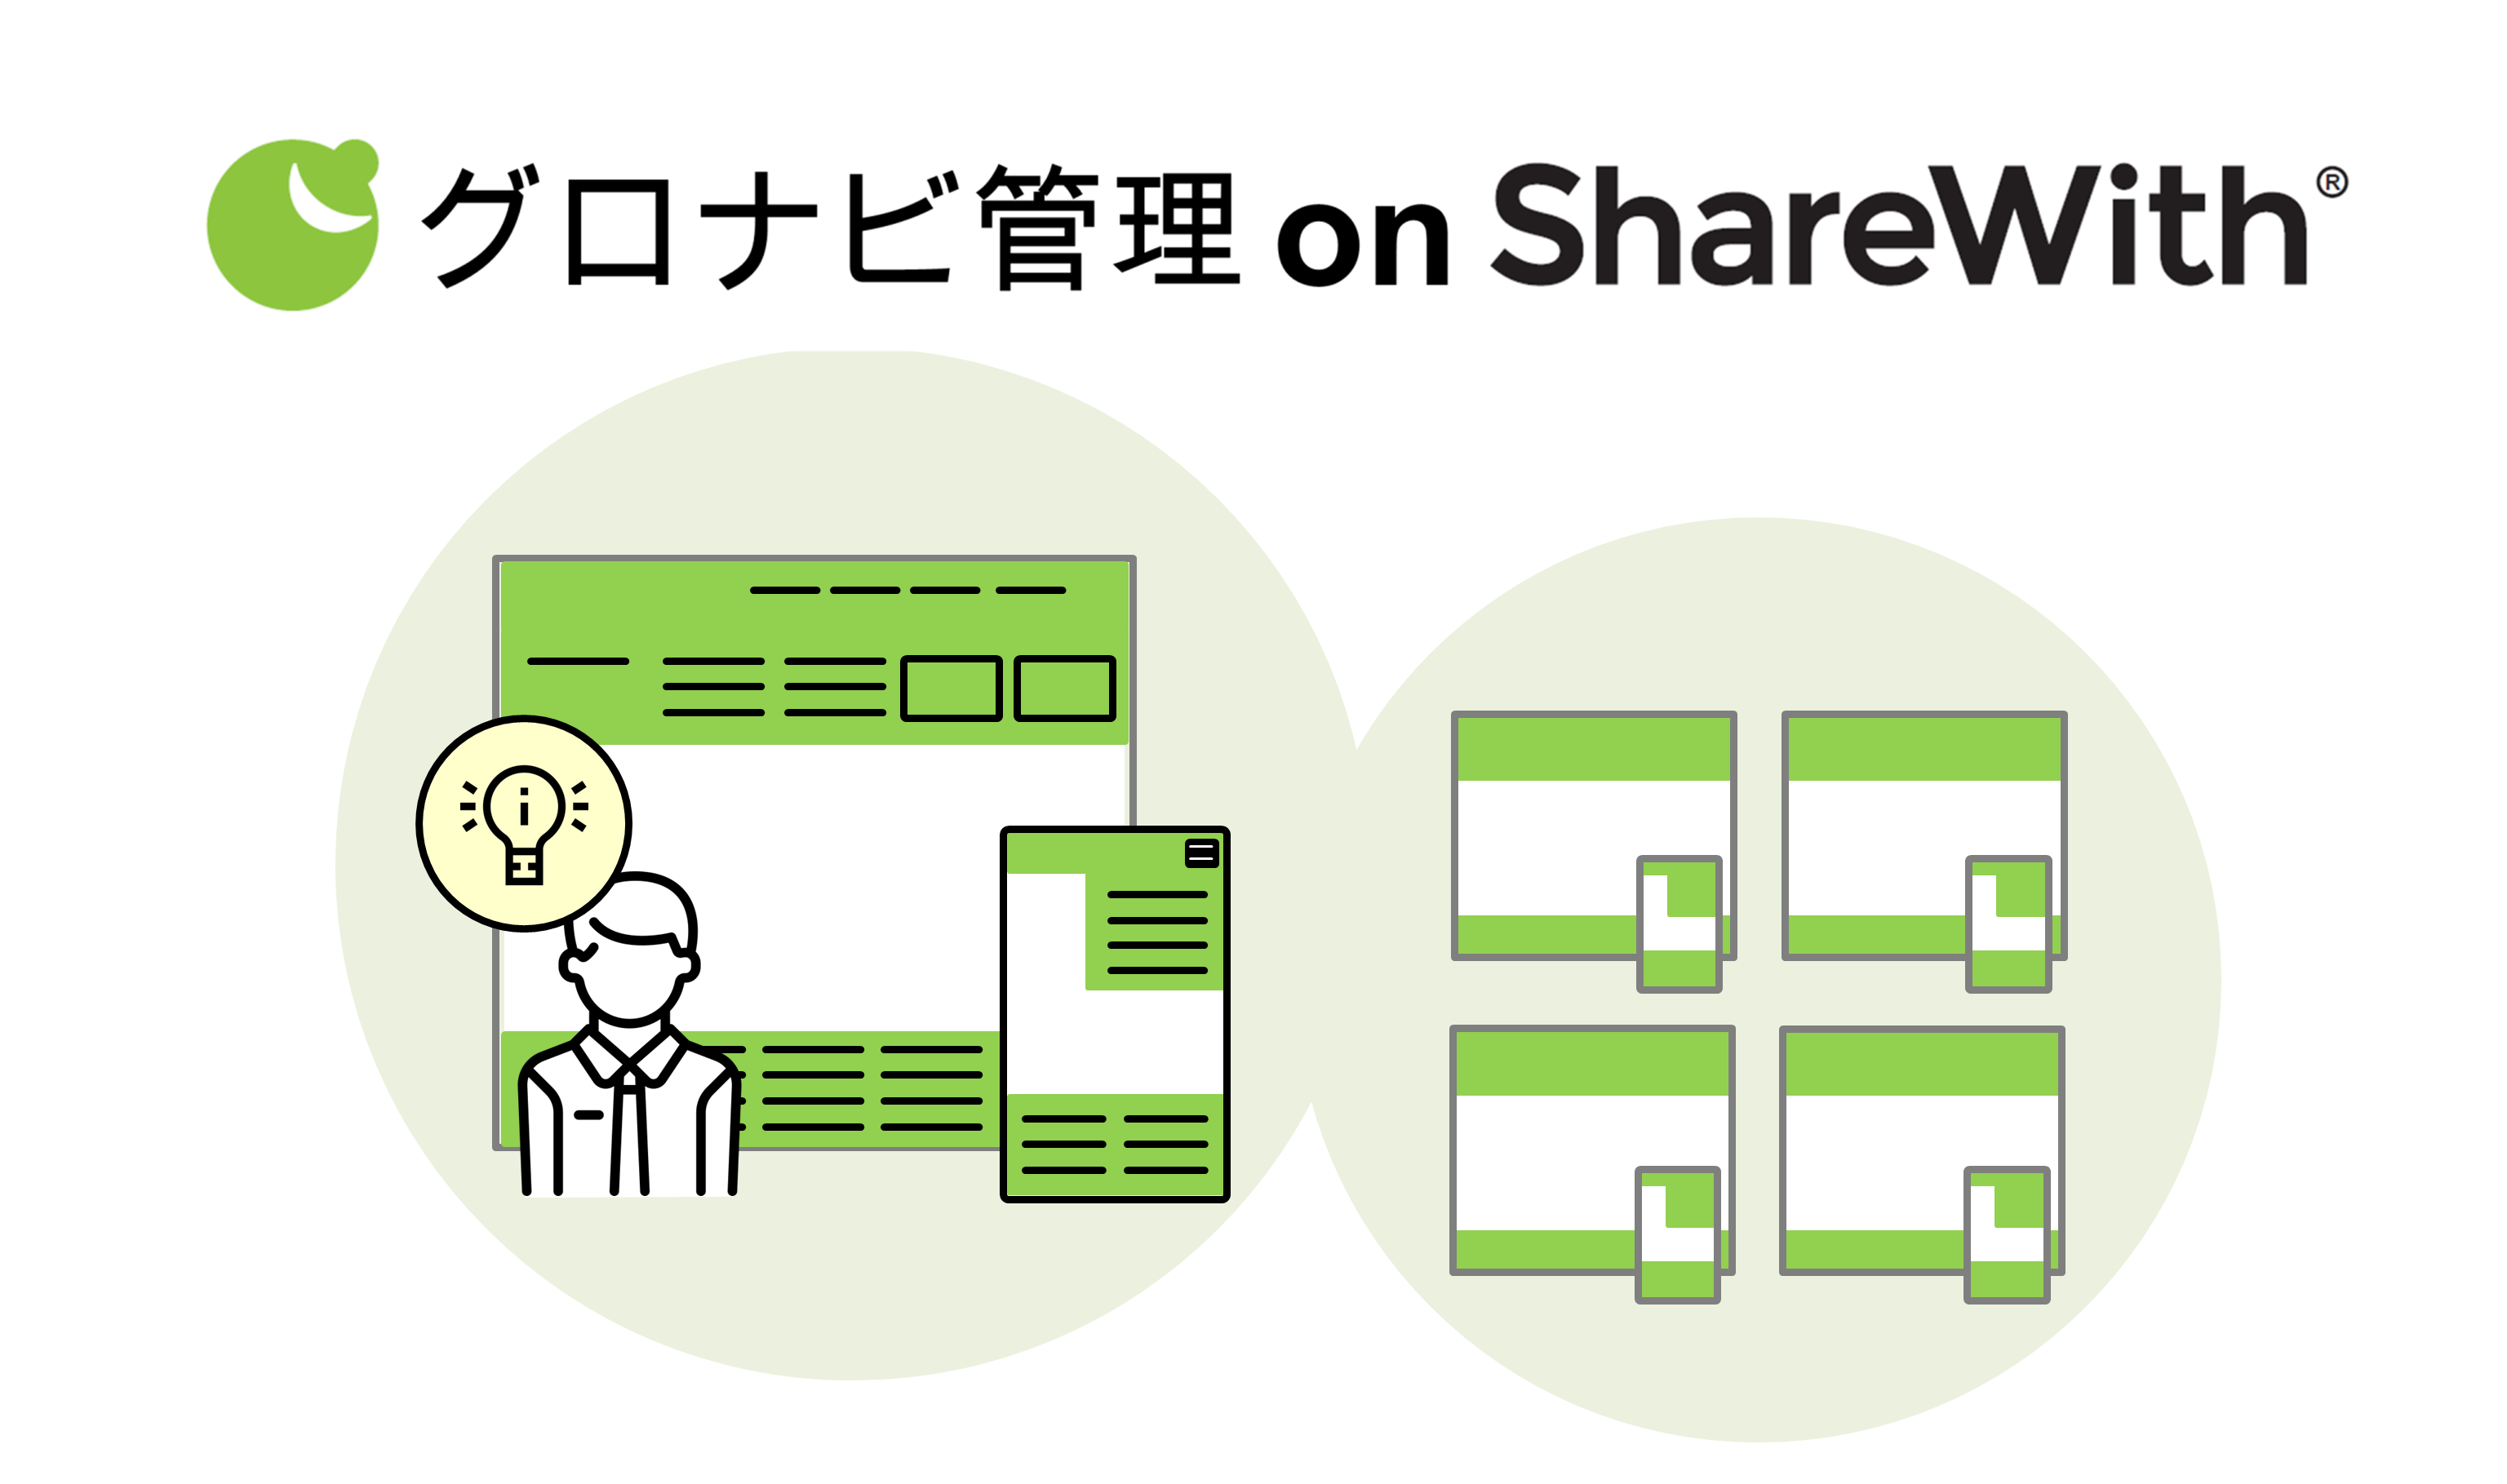 企業サイトの部門間調整から解放！「グロナビ管理 on ShareWith®」をリリース